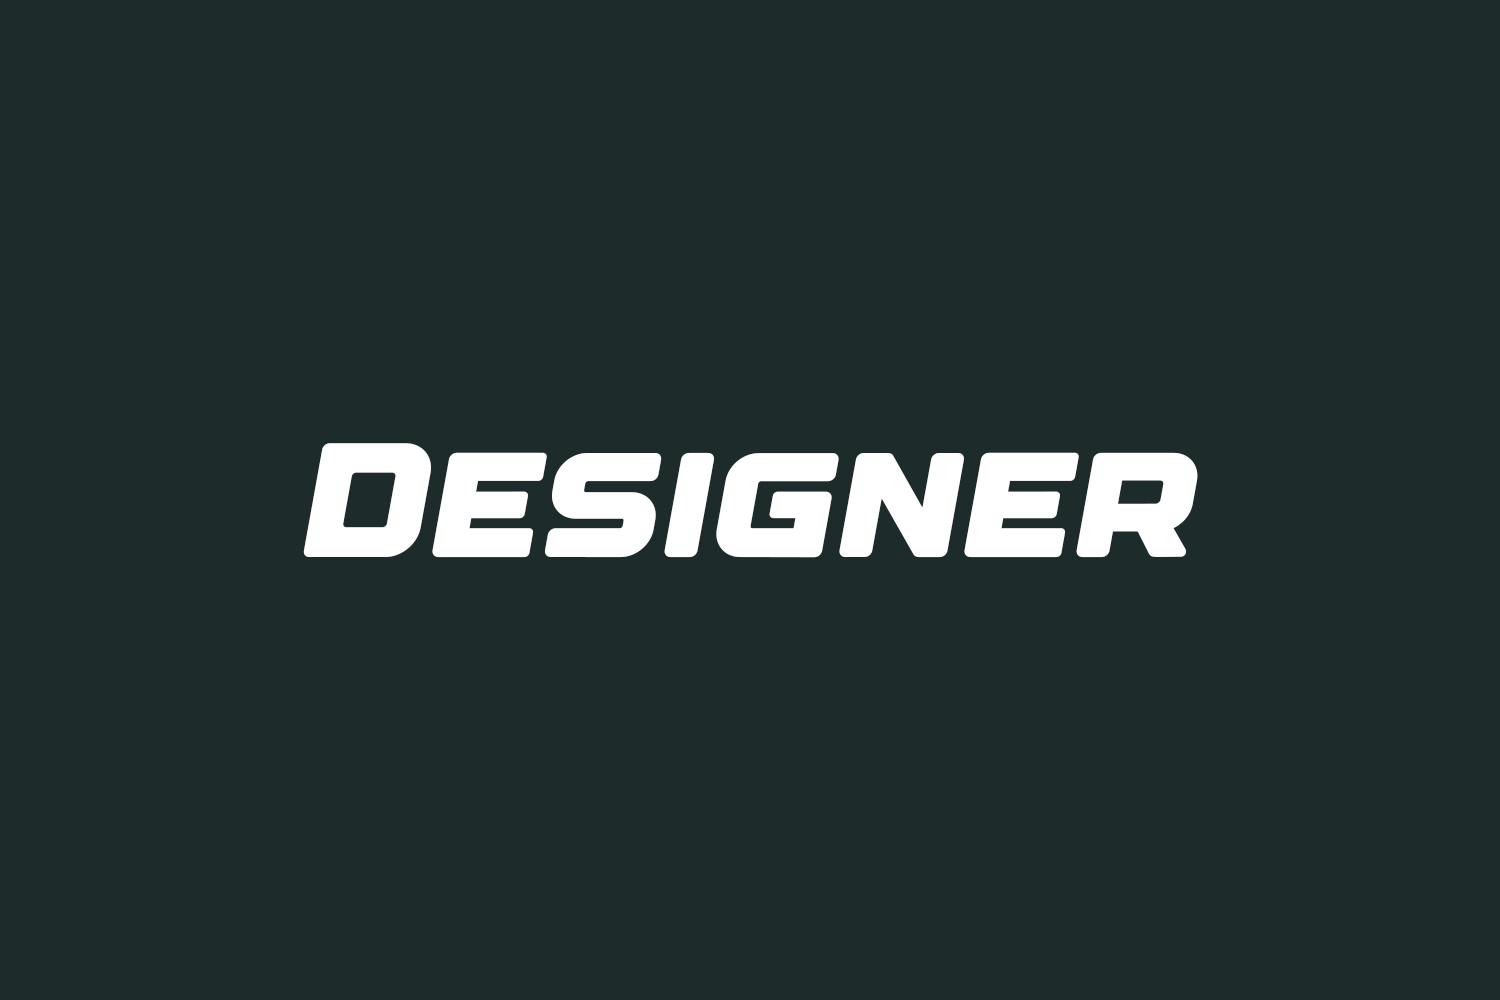 Designer Free Font